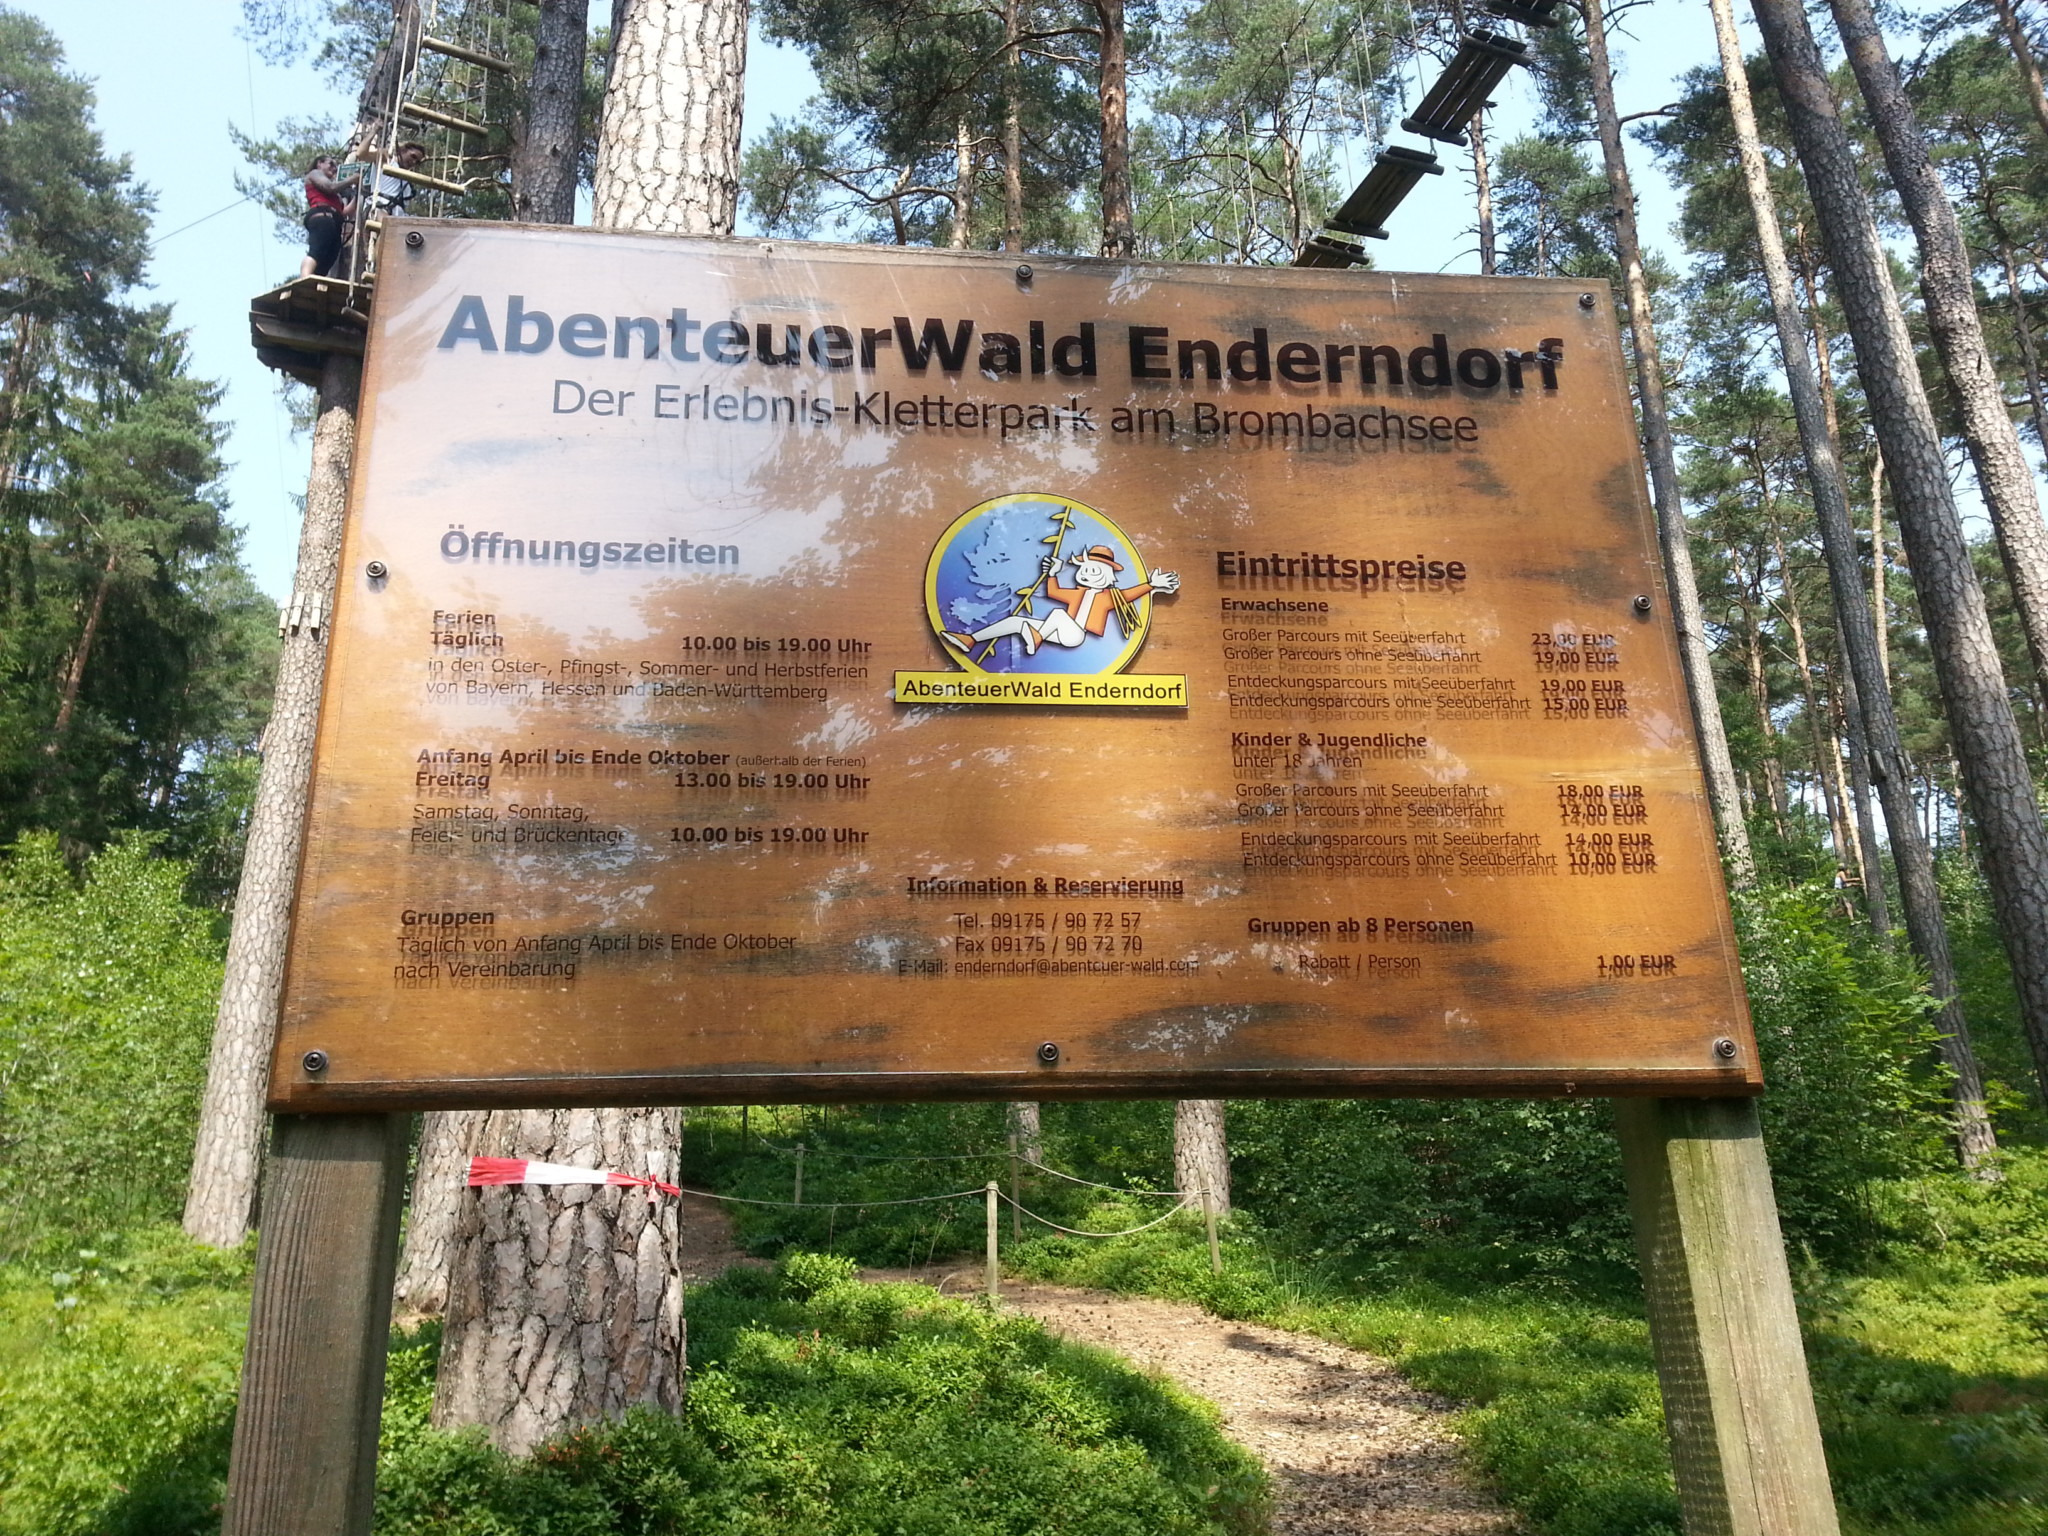 Abenteuerwald Enderndorf